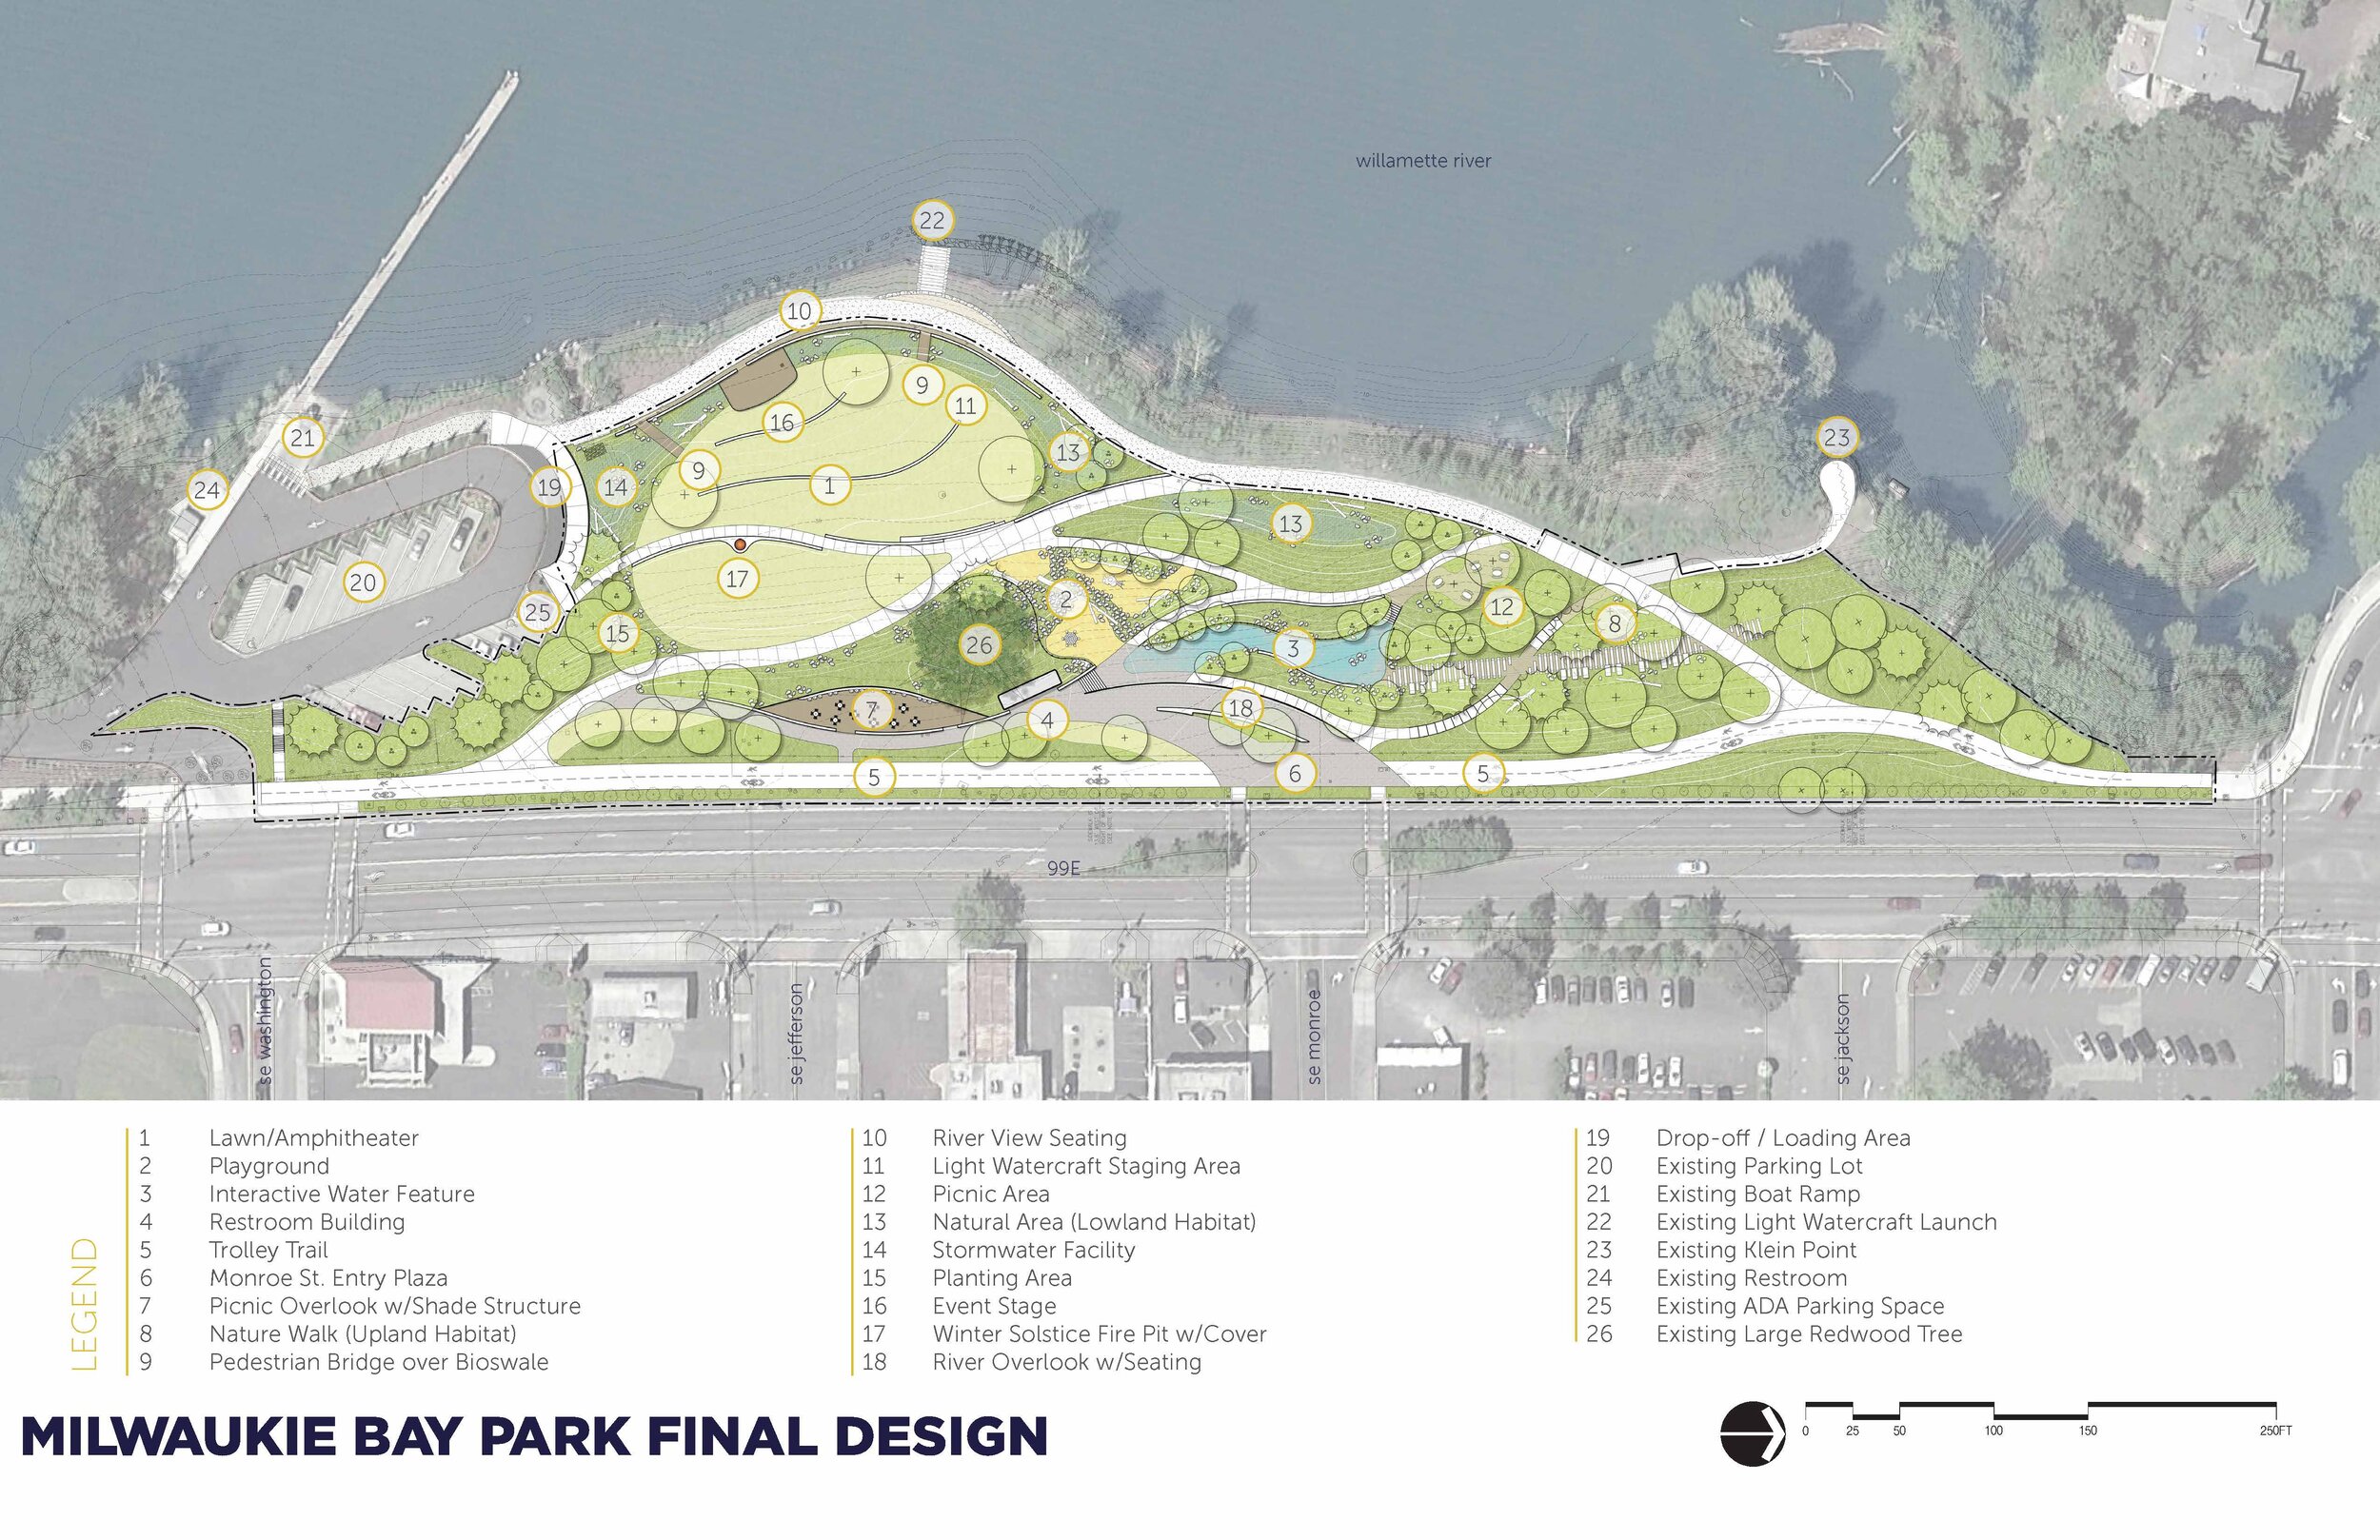 Milwaukie Bay Park - Final Design Plan*